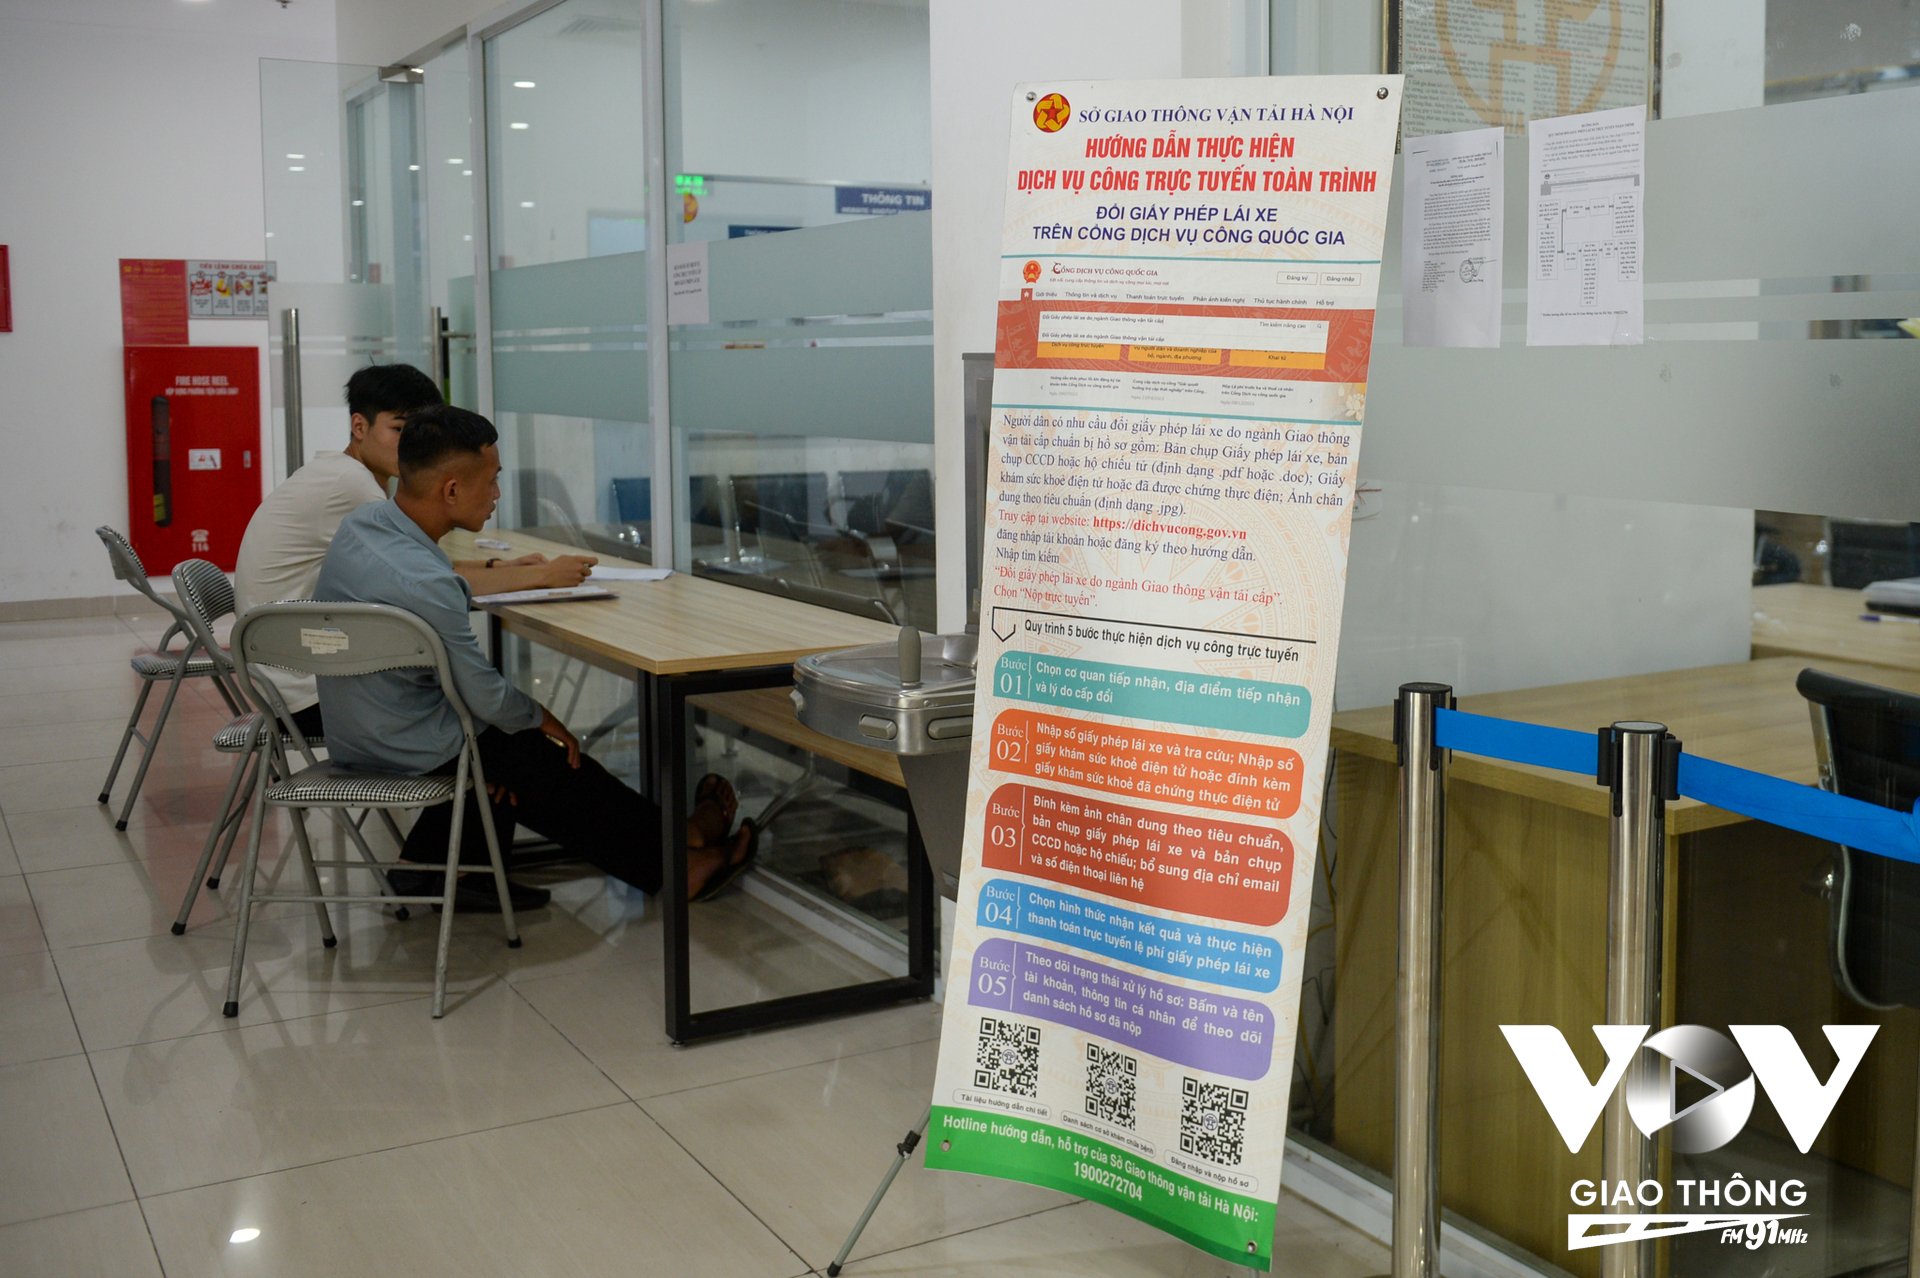 Sở GTVT có văn bản báo cáo UBND thành phố Hà Nội, đề xuất không tiếp nhận hồ sơ đổi GPLX trực tiếp tại bộ phận một cửa của Sở, mà sẽ nộp qua Cổng dịch vụ công Quốc gia. Ảnh: Bảo Ngọc.